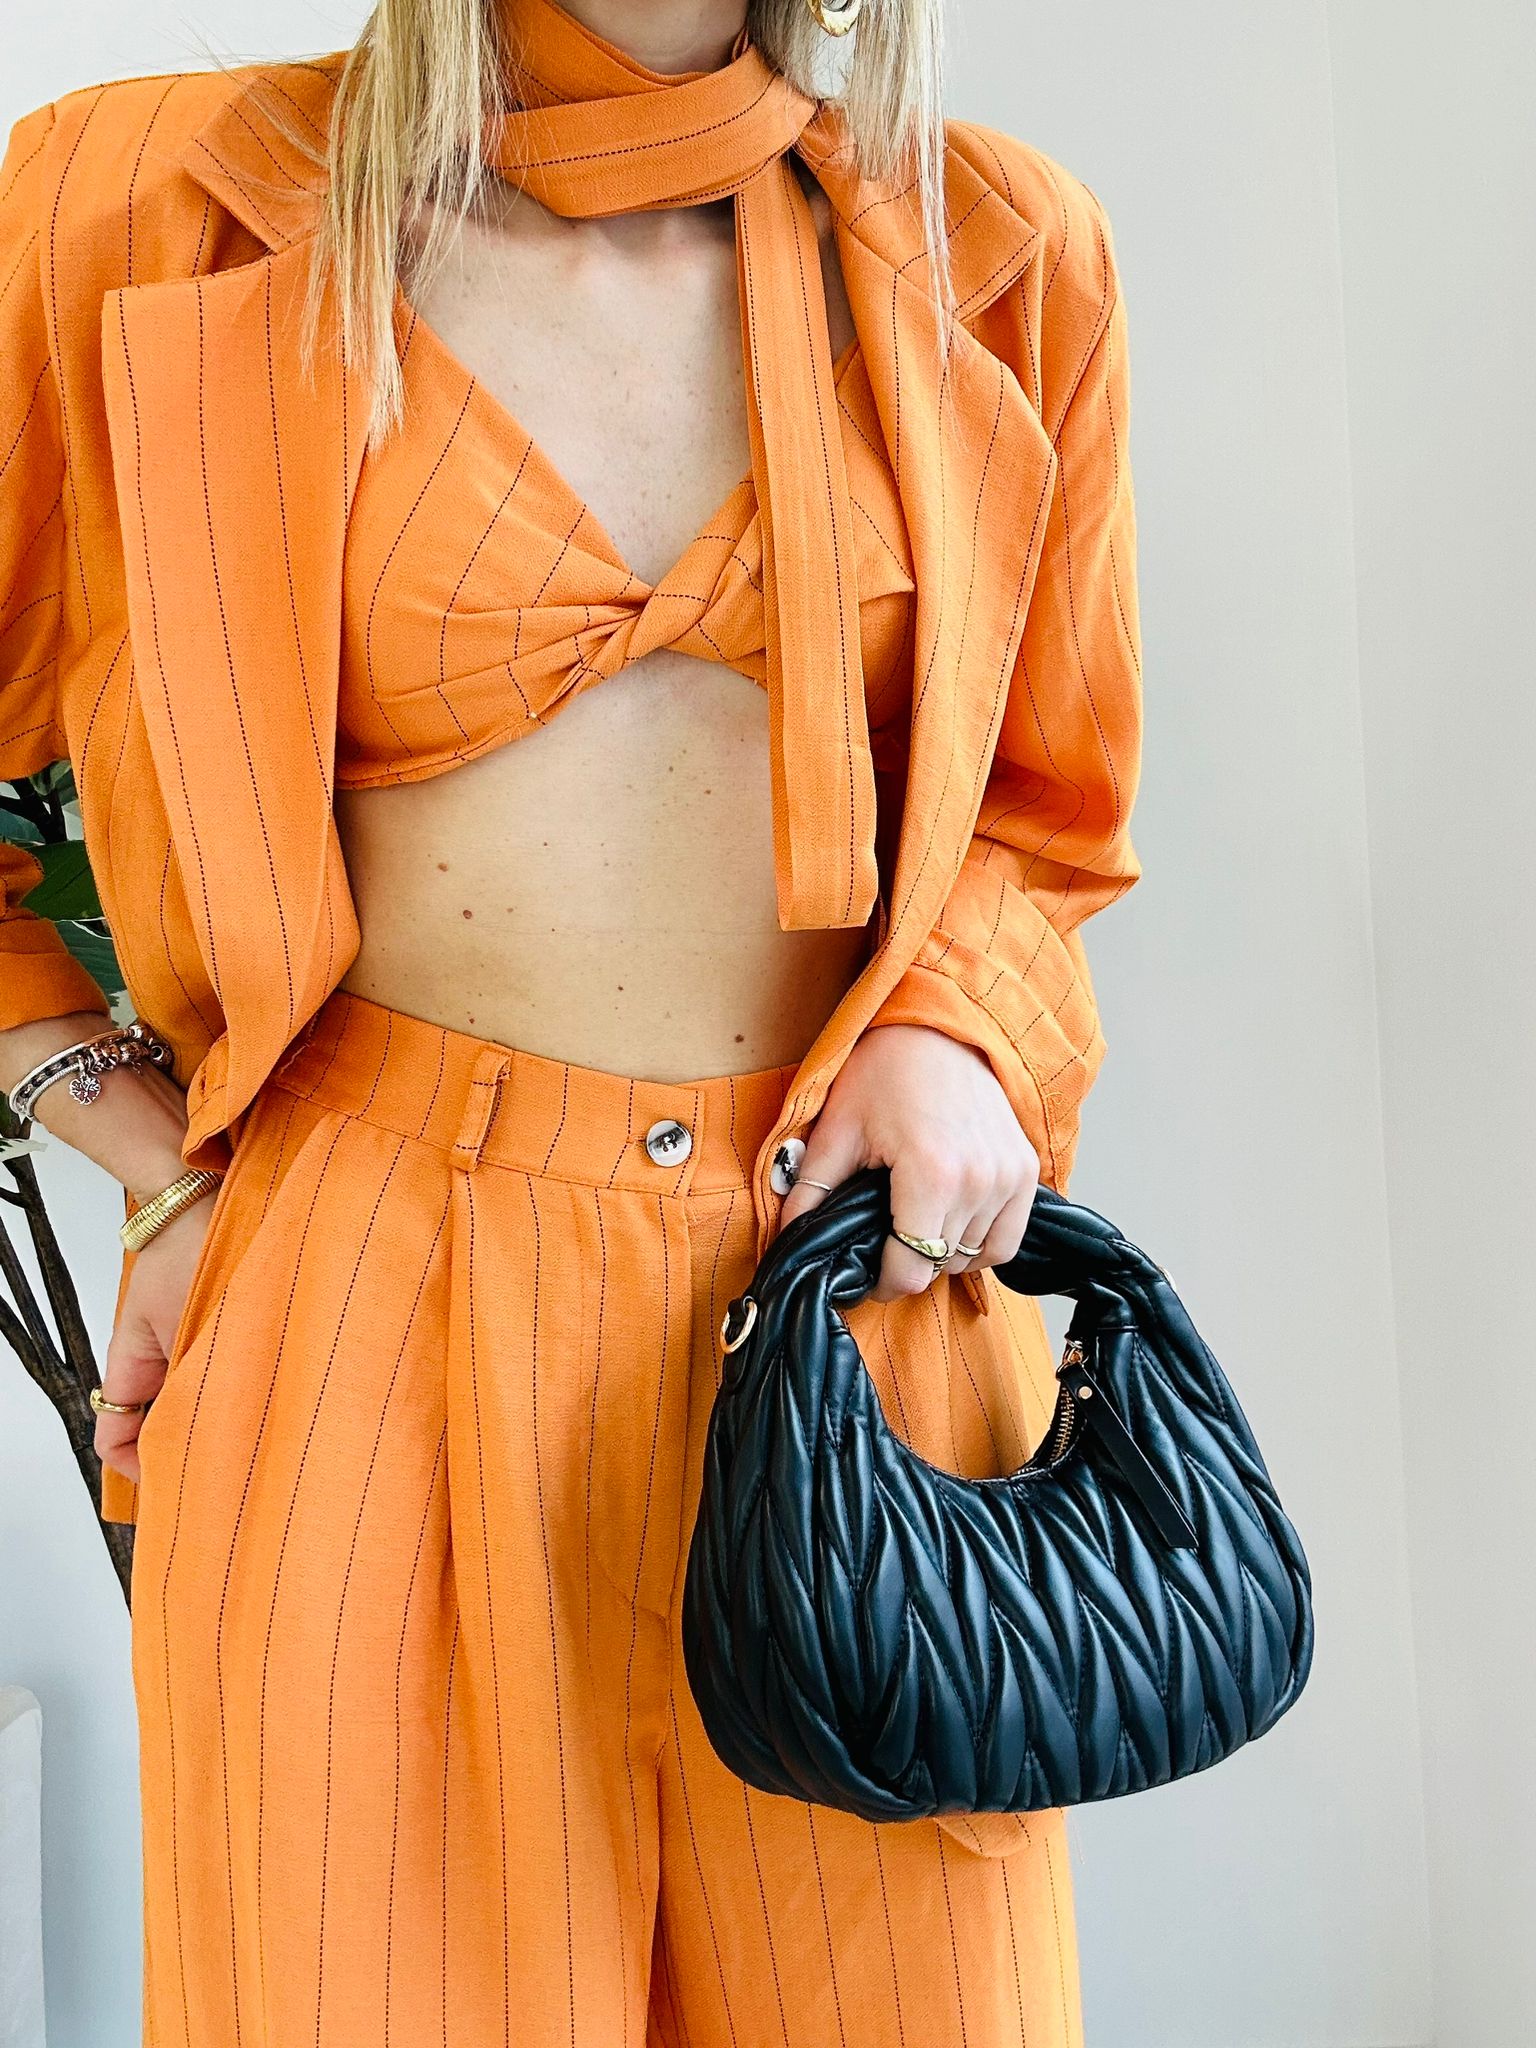 Coordinato Tiziana (Top + Blazer + Pantalone) Arancione